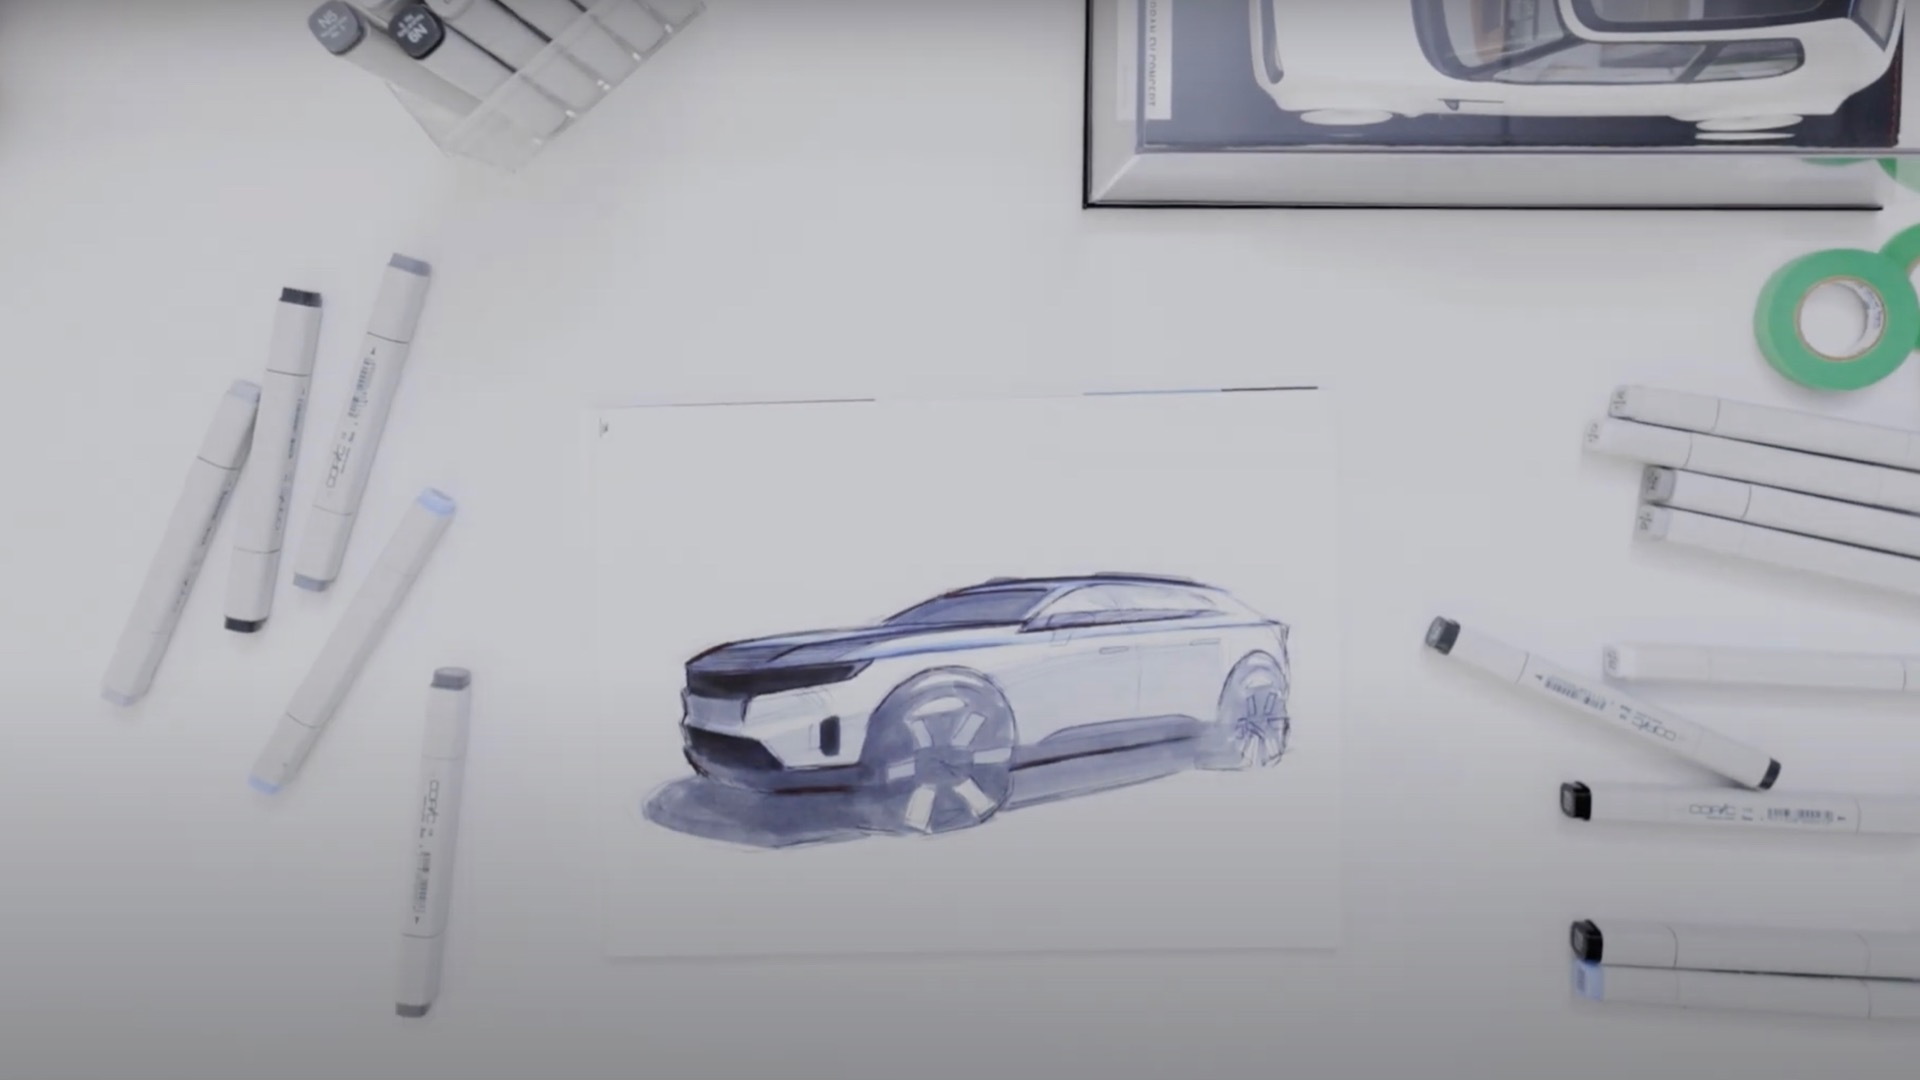 Honda Prologue design sketch